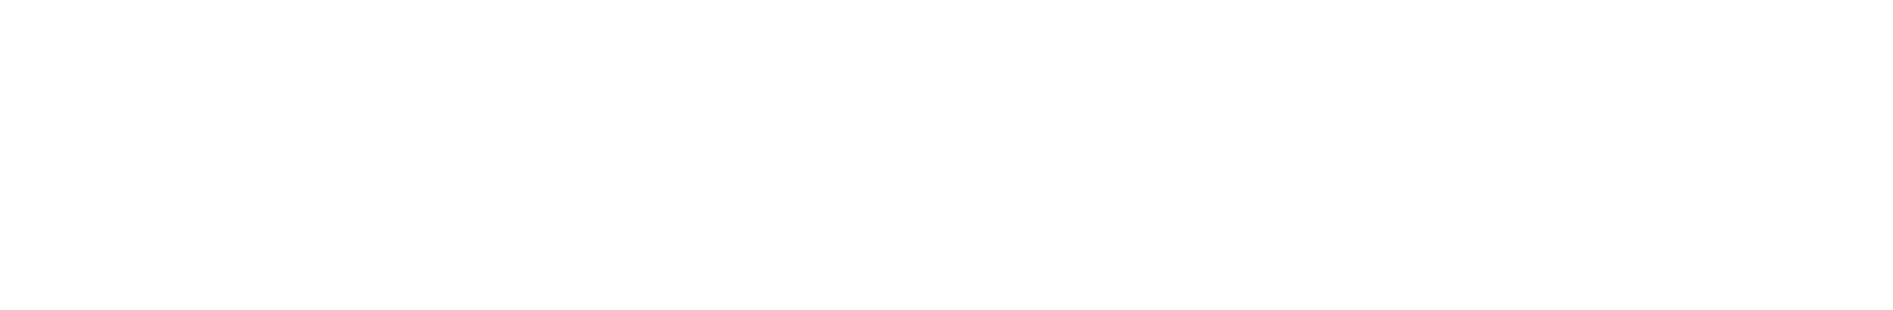 Novartis logo large for dark backgrounds (transparent PNG)